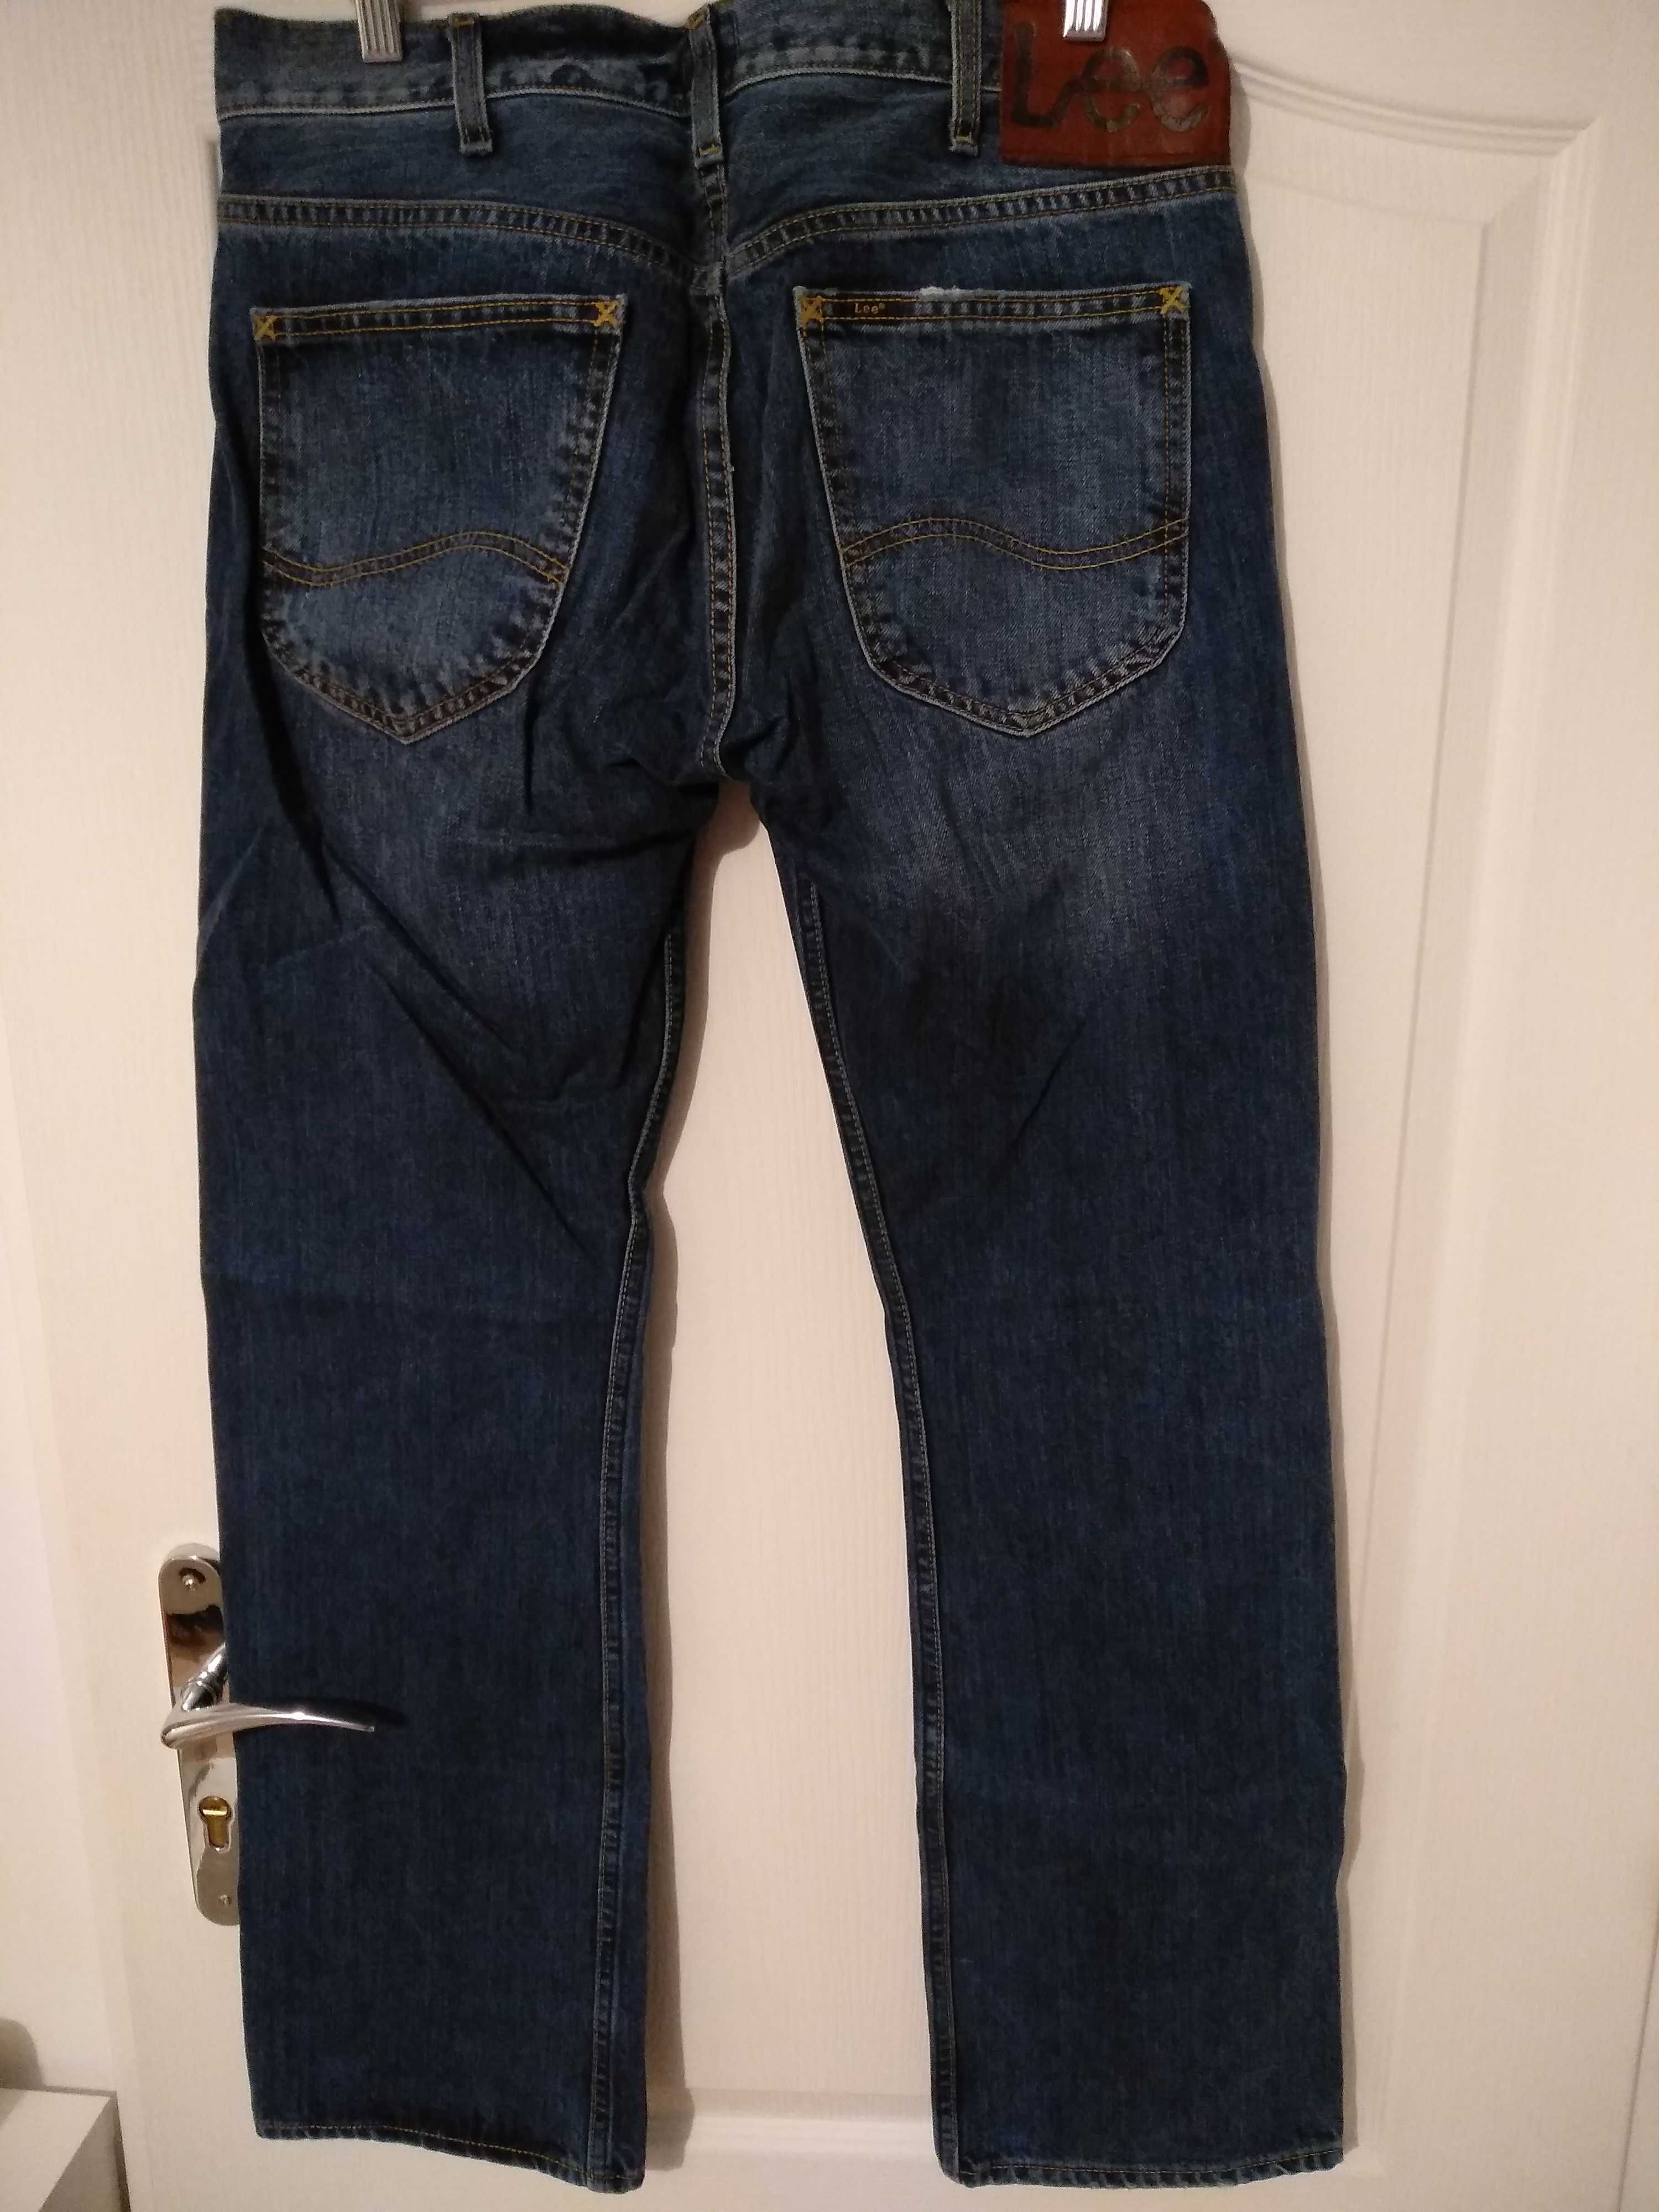 Spodnie męskie jeans Lee W31 L32